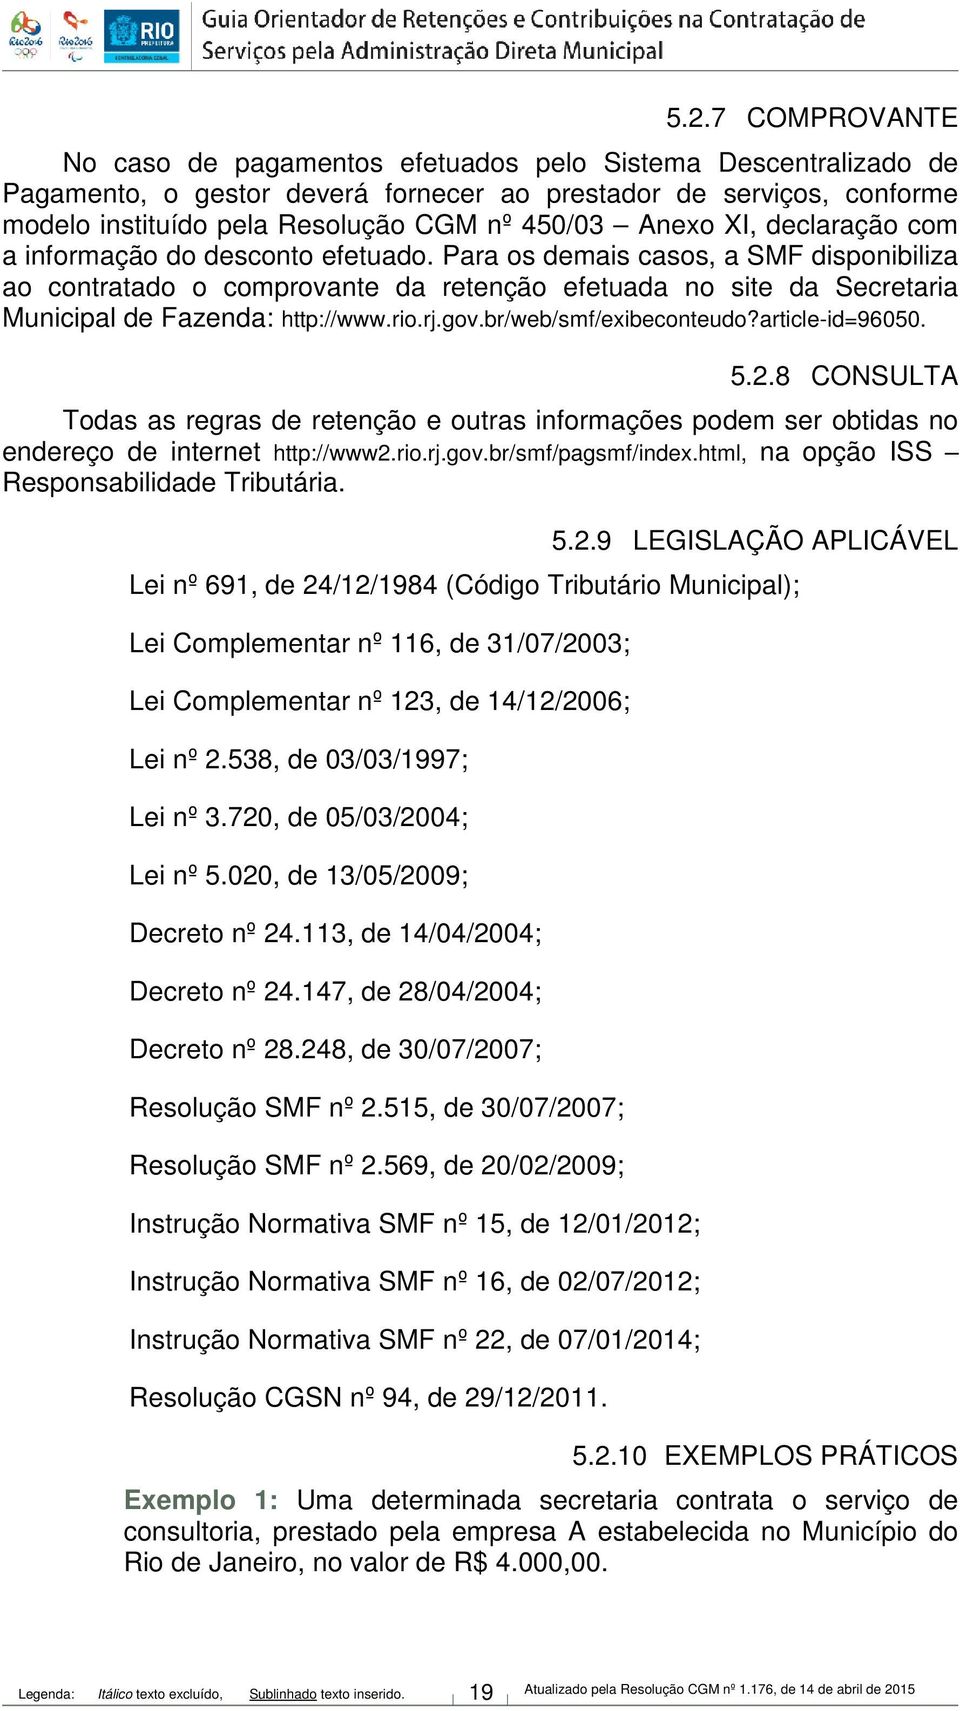 Para os demais casos, a SMF disponibiliza ao contratado o comprovante da retenção efetuada no site da Secretaria Municipal de Fazenda: http://www.rio.rj.gov.br/web/smf/exibeconteudo?article-id=96050.